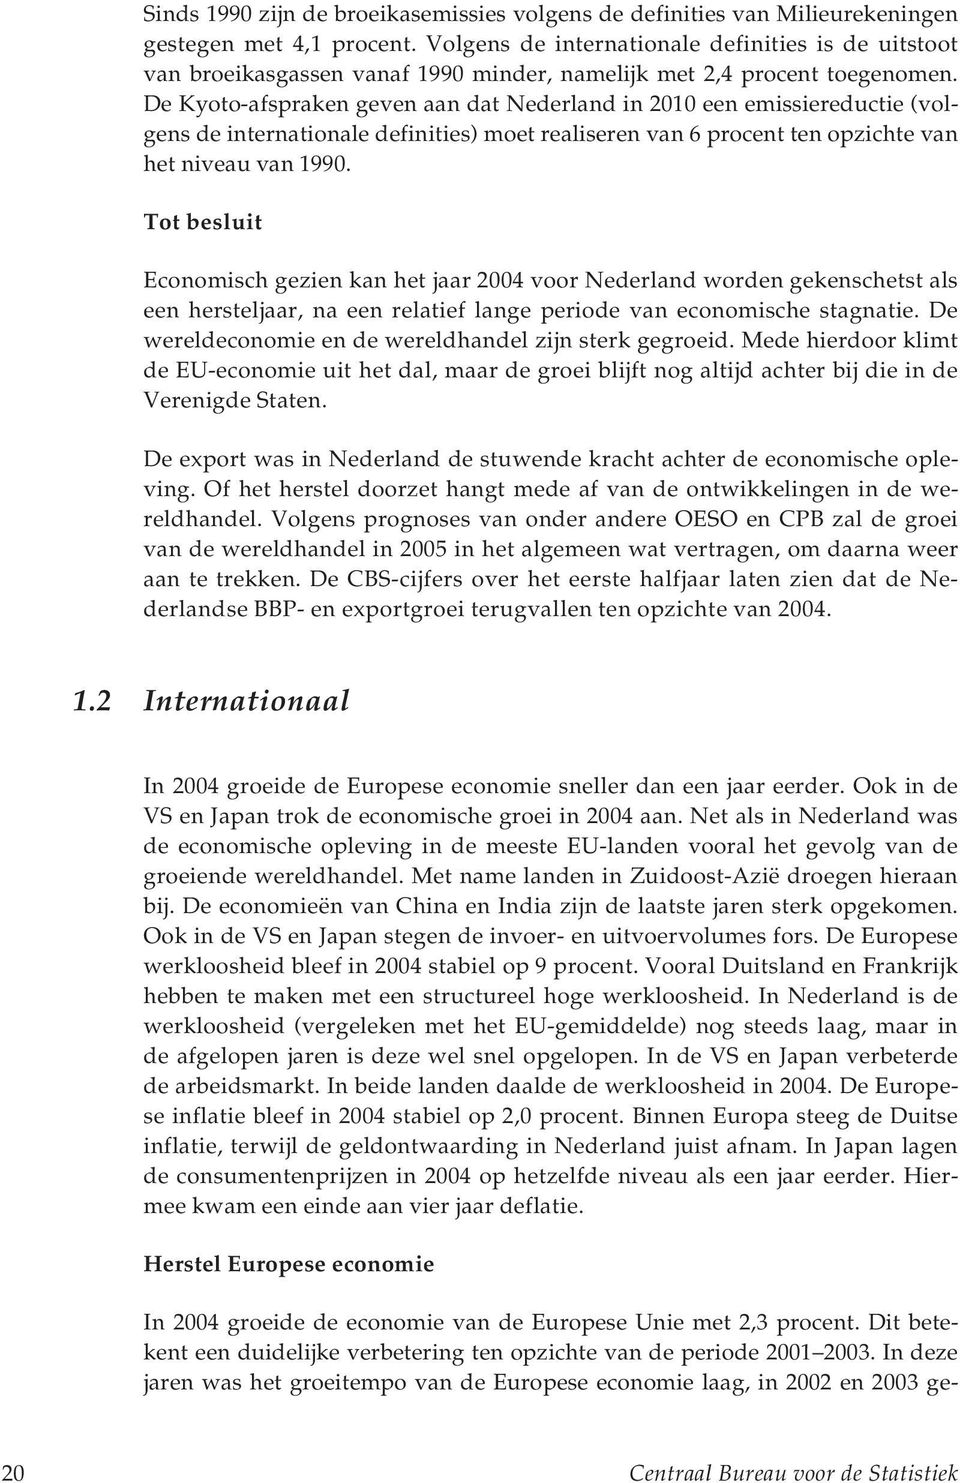 De Kyoto-afspraken geven aan dat Nederland in 2010 een emissiereductie (volgens de internationale definities) moet realiseren van 6 procent ten opzichte van het niveau van 1990.